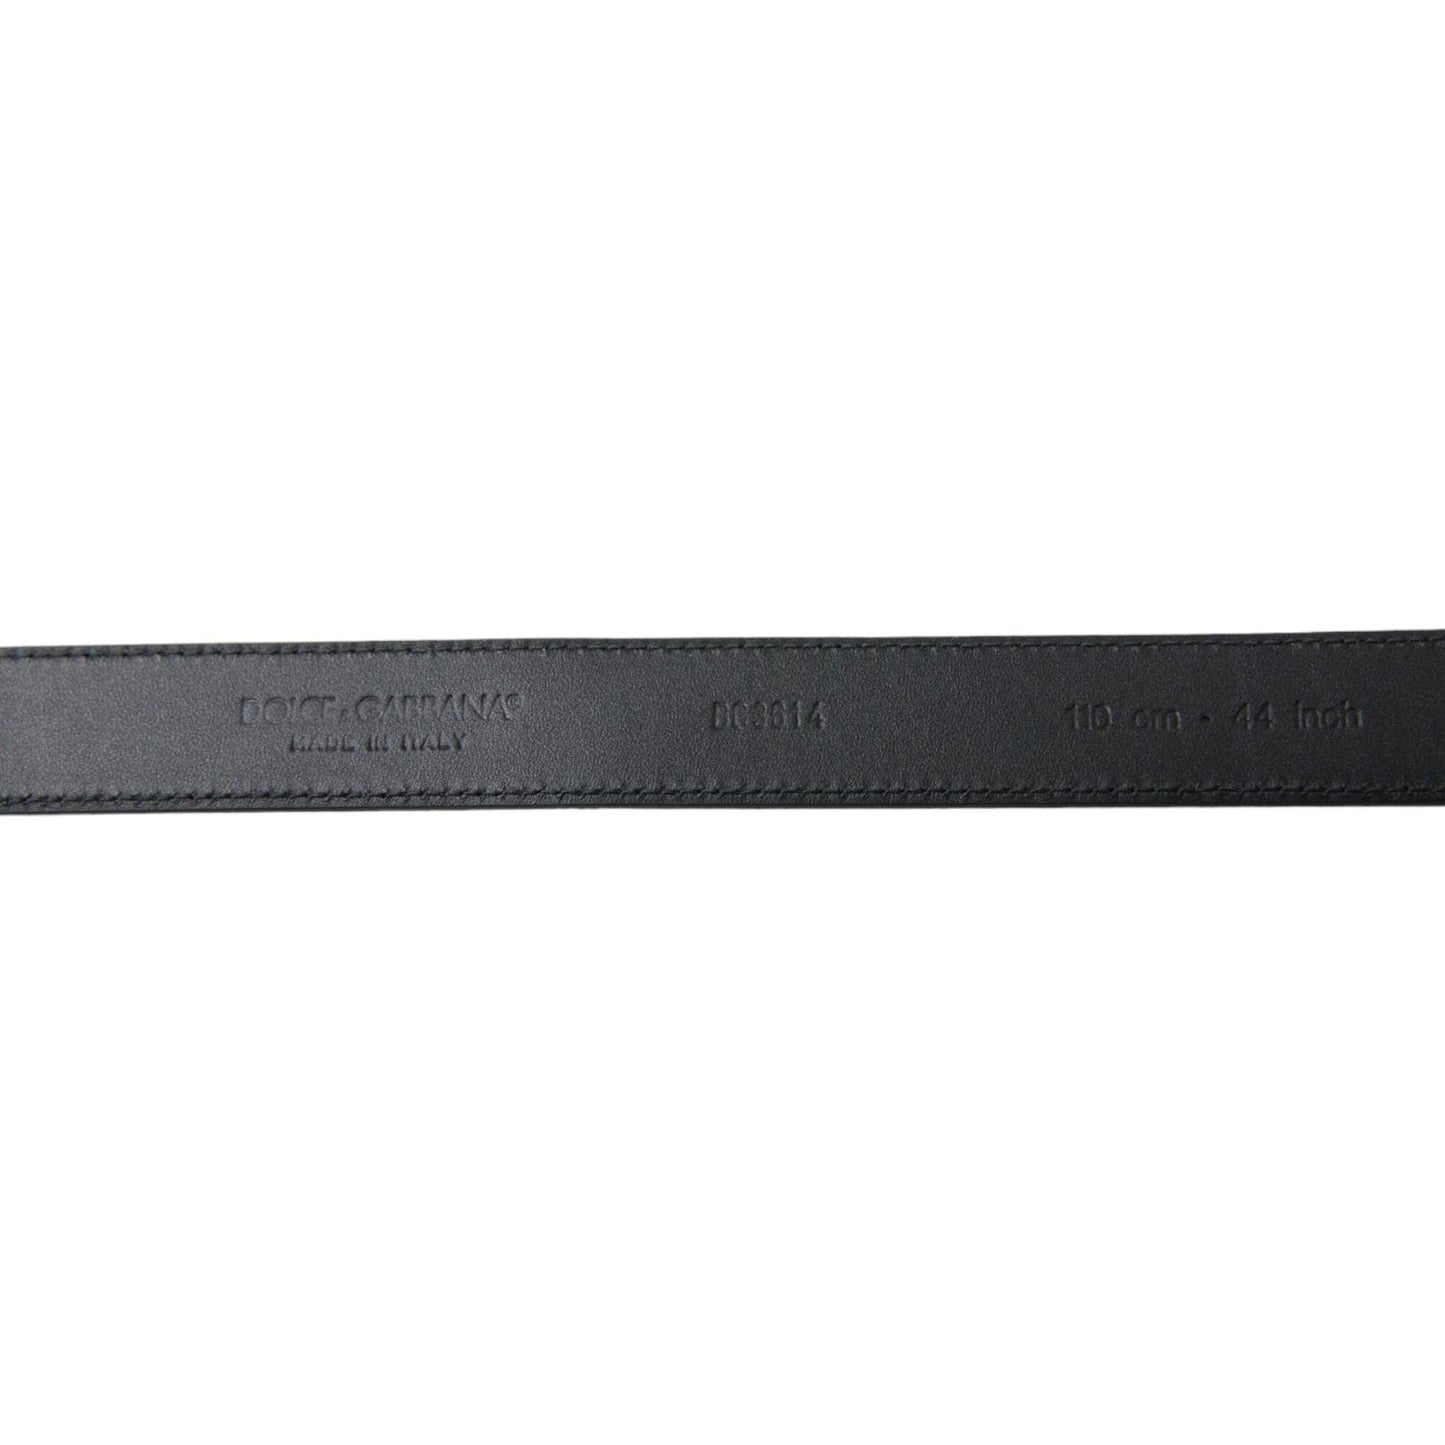 Dolce & GabbanaElegant Black Leather Belt with Metal BuckleMcRichard Designer Brands£209.00